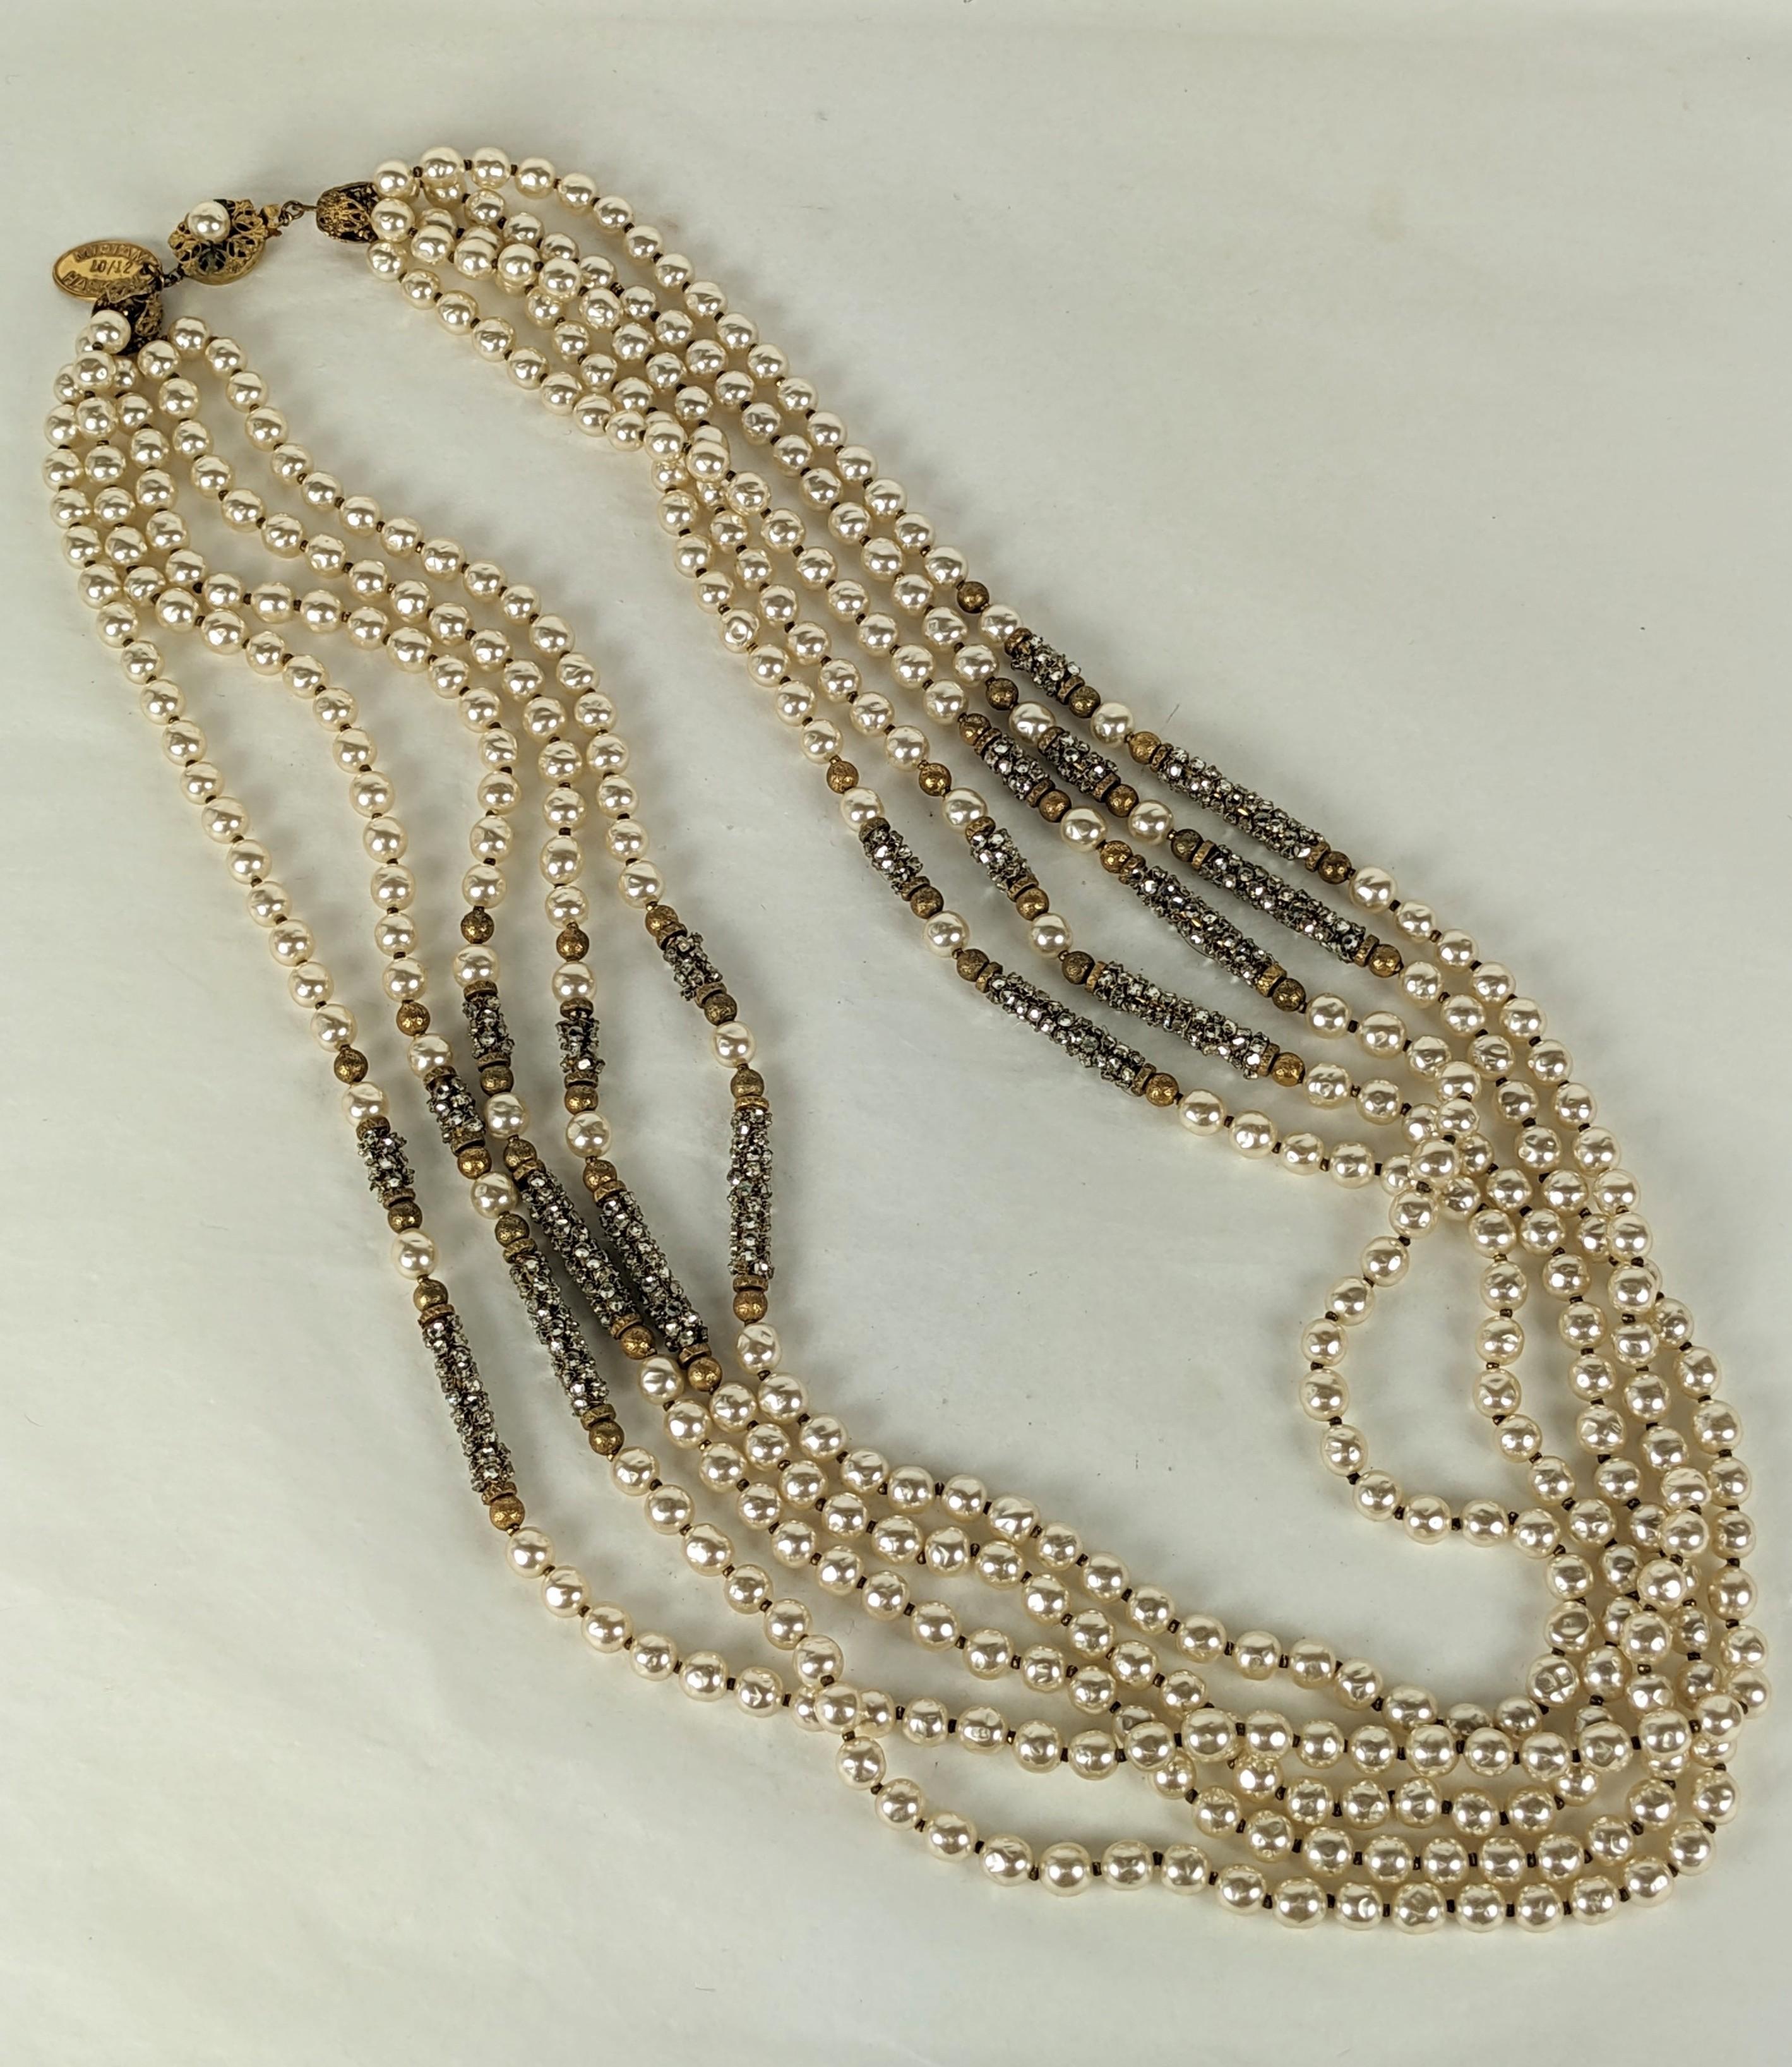 Außergewöhnliche Miriam Haskell Perle und Rose Monte Pave Bar Halskette aus den 1980er Jahren. Diese Halskette ist eine Neuauflage eines berühmten Stücks von Miriam Haskell aus den 1930er Jahren. Eine Reihe der schönsten Stücke, die jemals